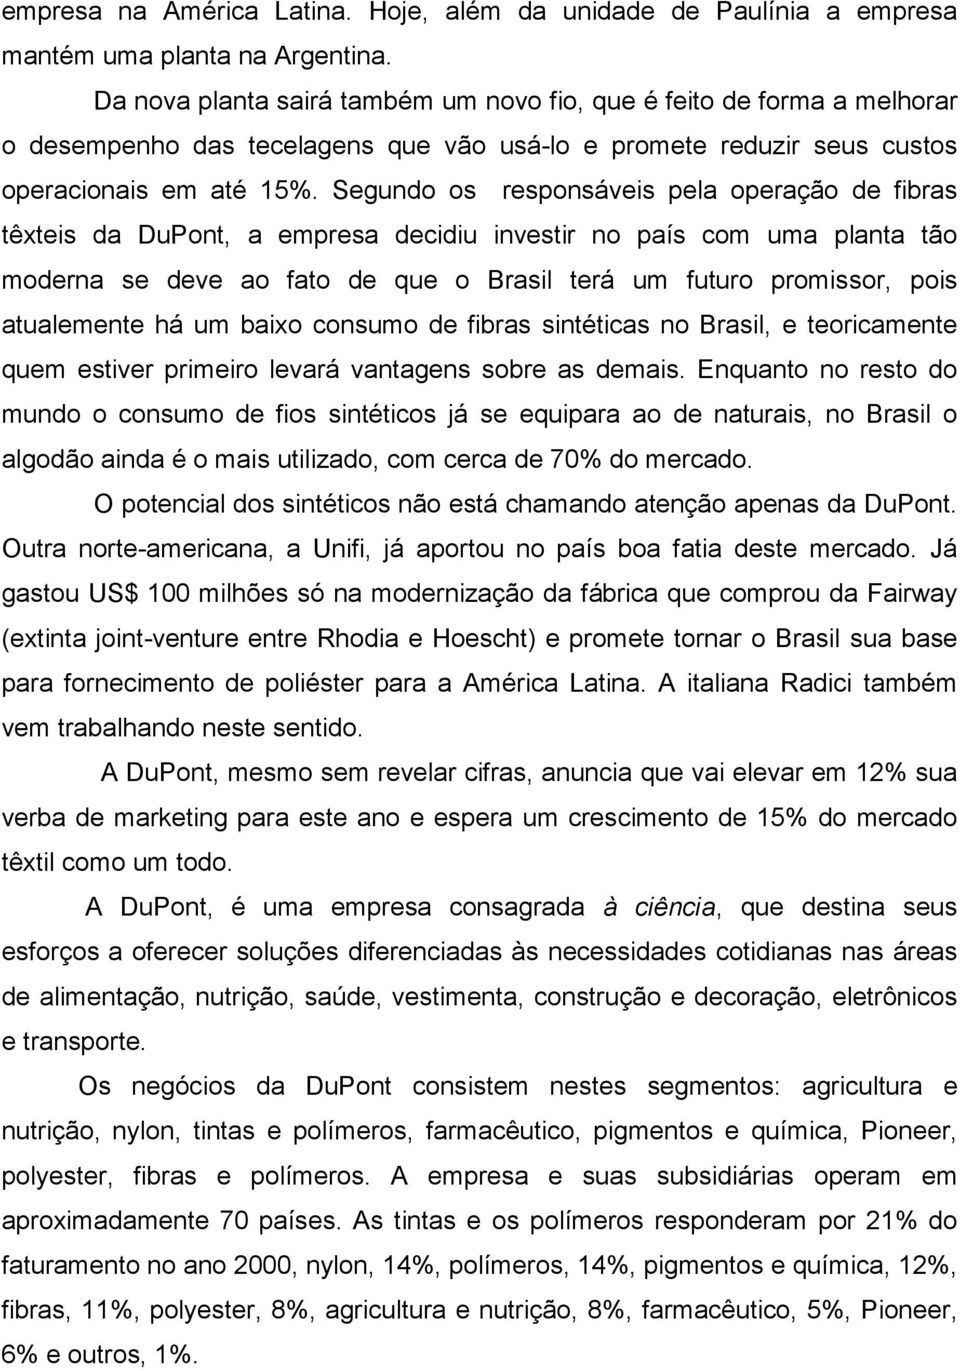 Segundo os responsáveis pela operação de fibras têxteis da DuPont, a empresa decidiu investir no país com uma planta tão moderna se deve ao fato de que o Brasil terá um futuro promissor, pois